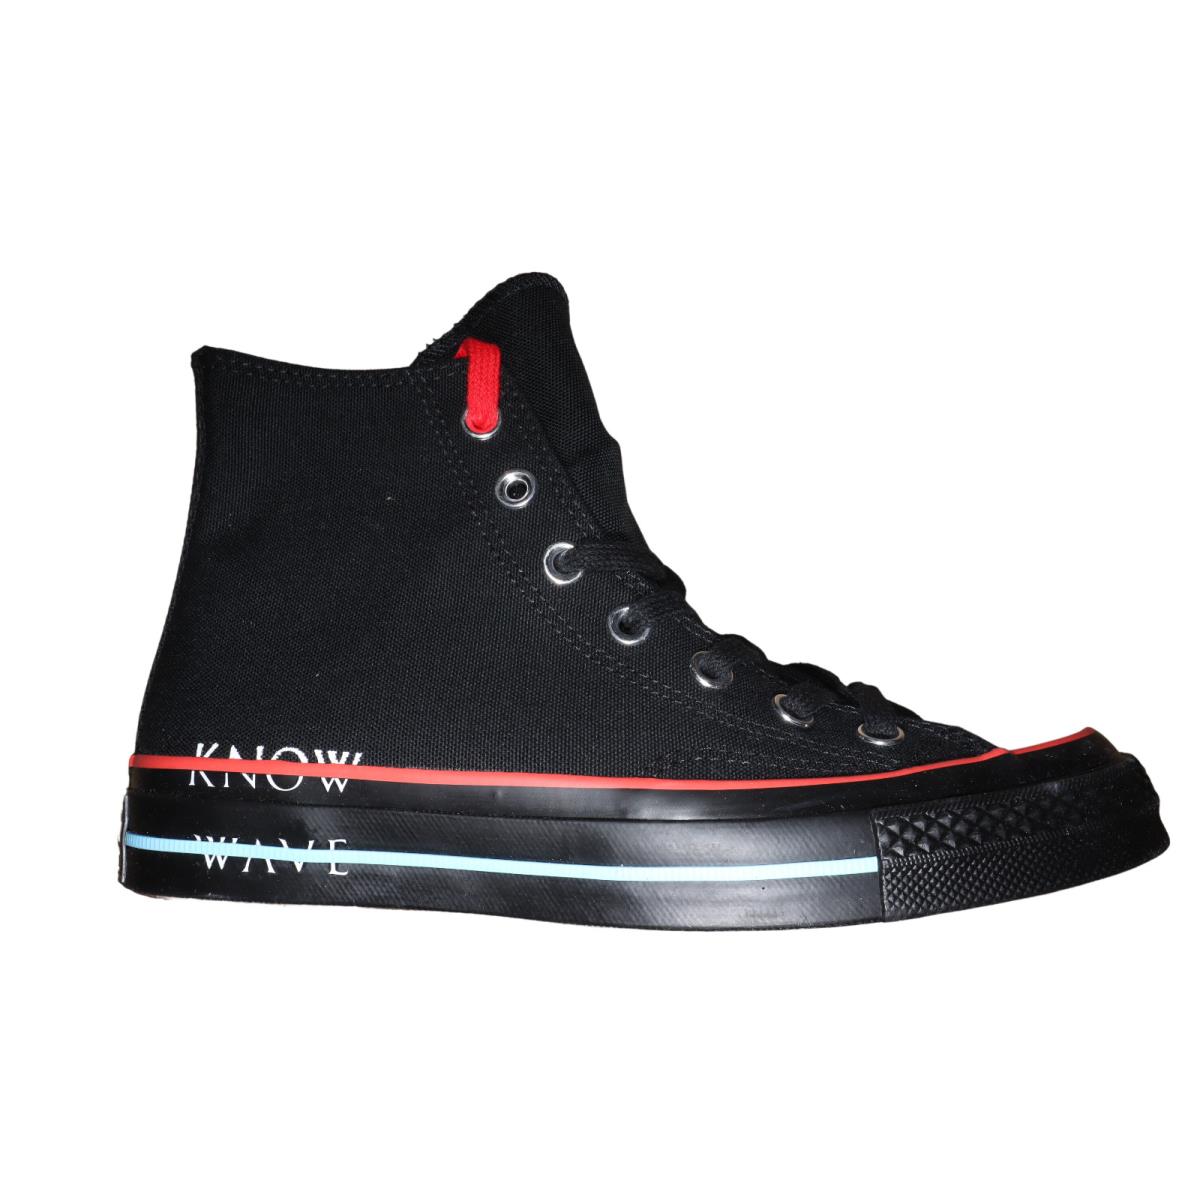 Converse x Know Wave Black Blue Red Chuck HI Unisex Size M 5 W 7 161378C Shoe | 065277580600 - Converse shoes Chuck - Black | SporTipTop